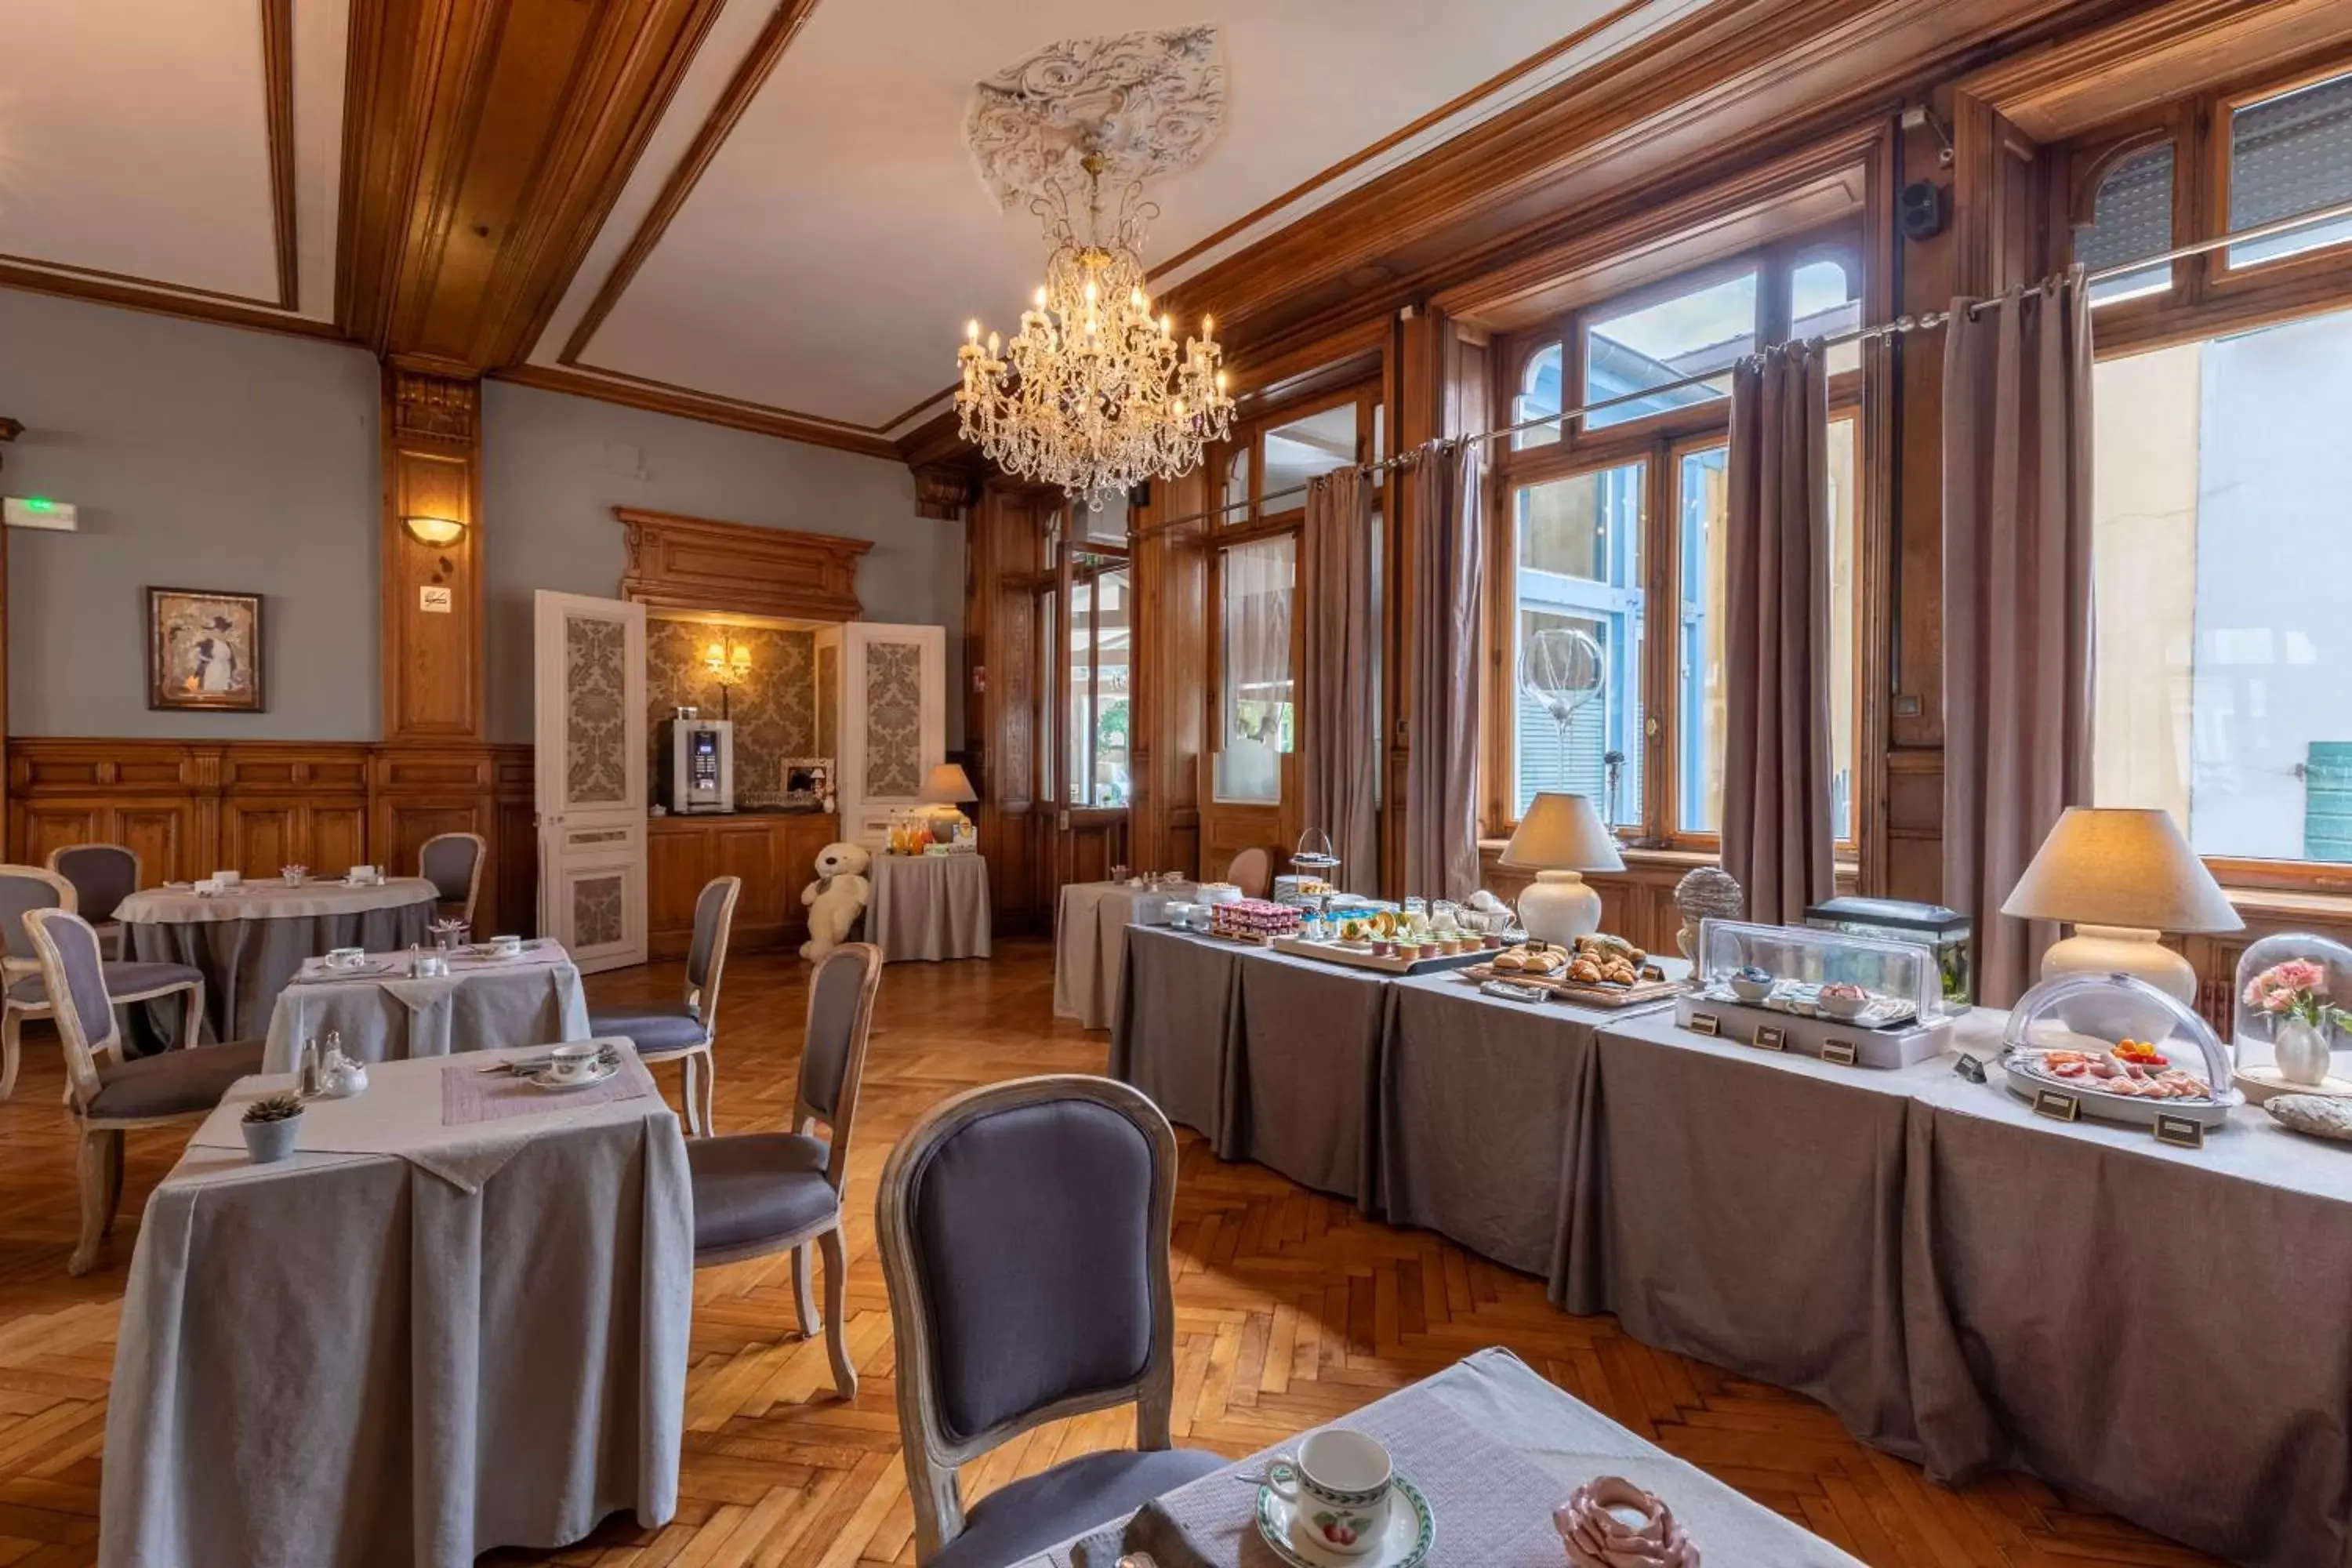 Breakfast, Restaurant/Places to Eat in The Originals City, Hôtel de la Balance, Montbéliard